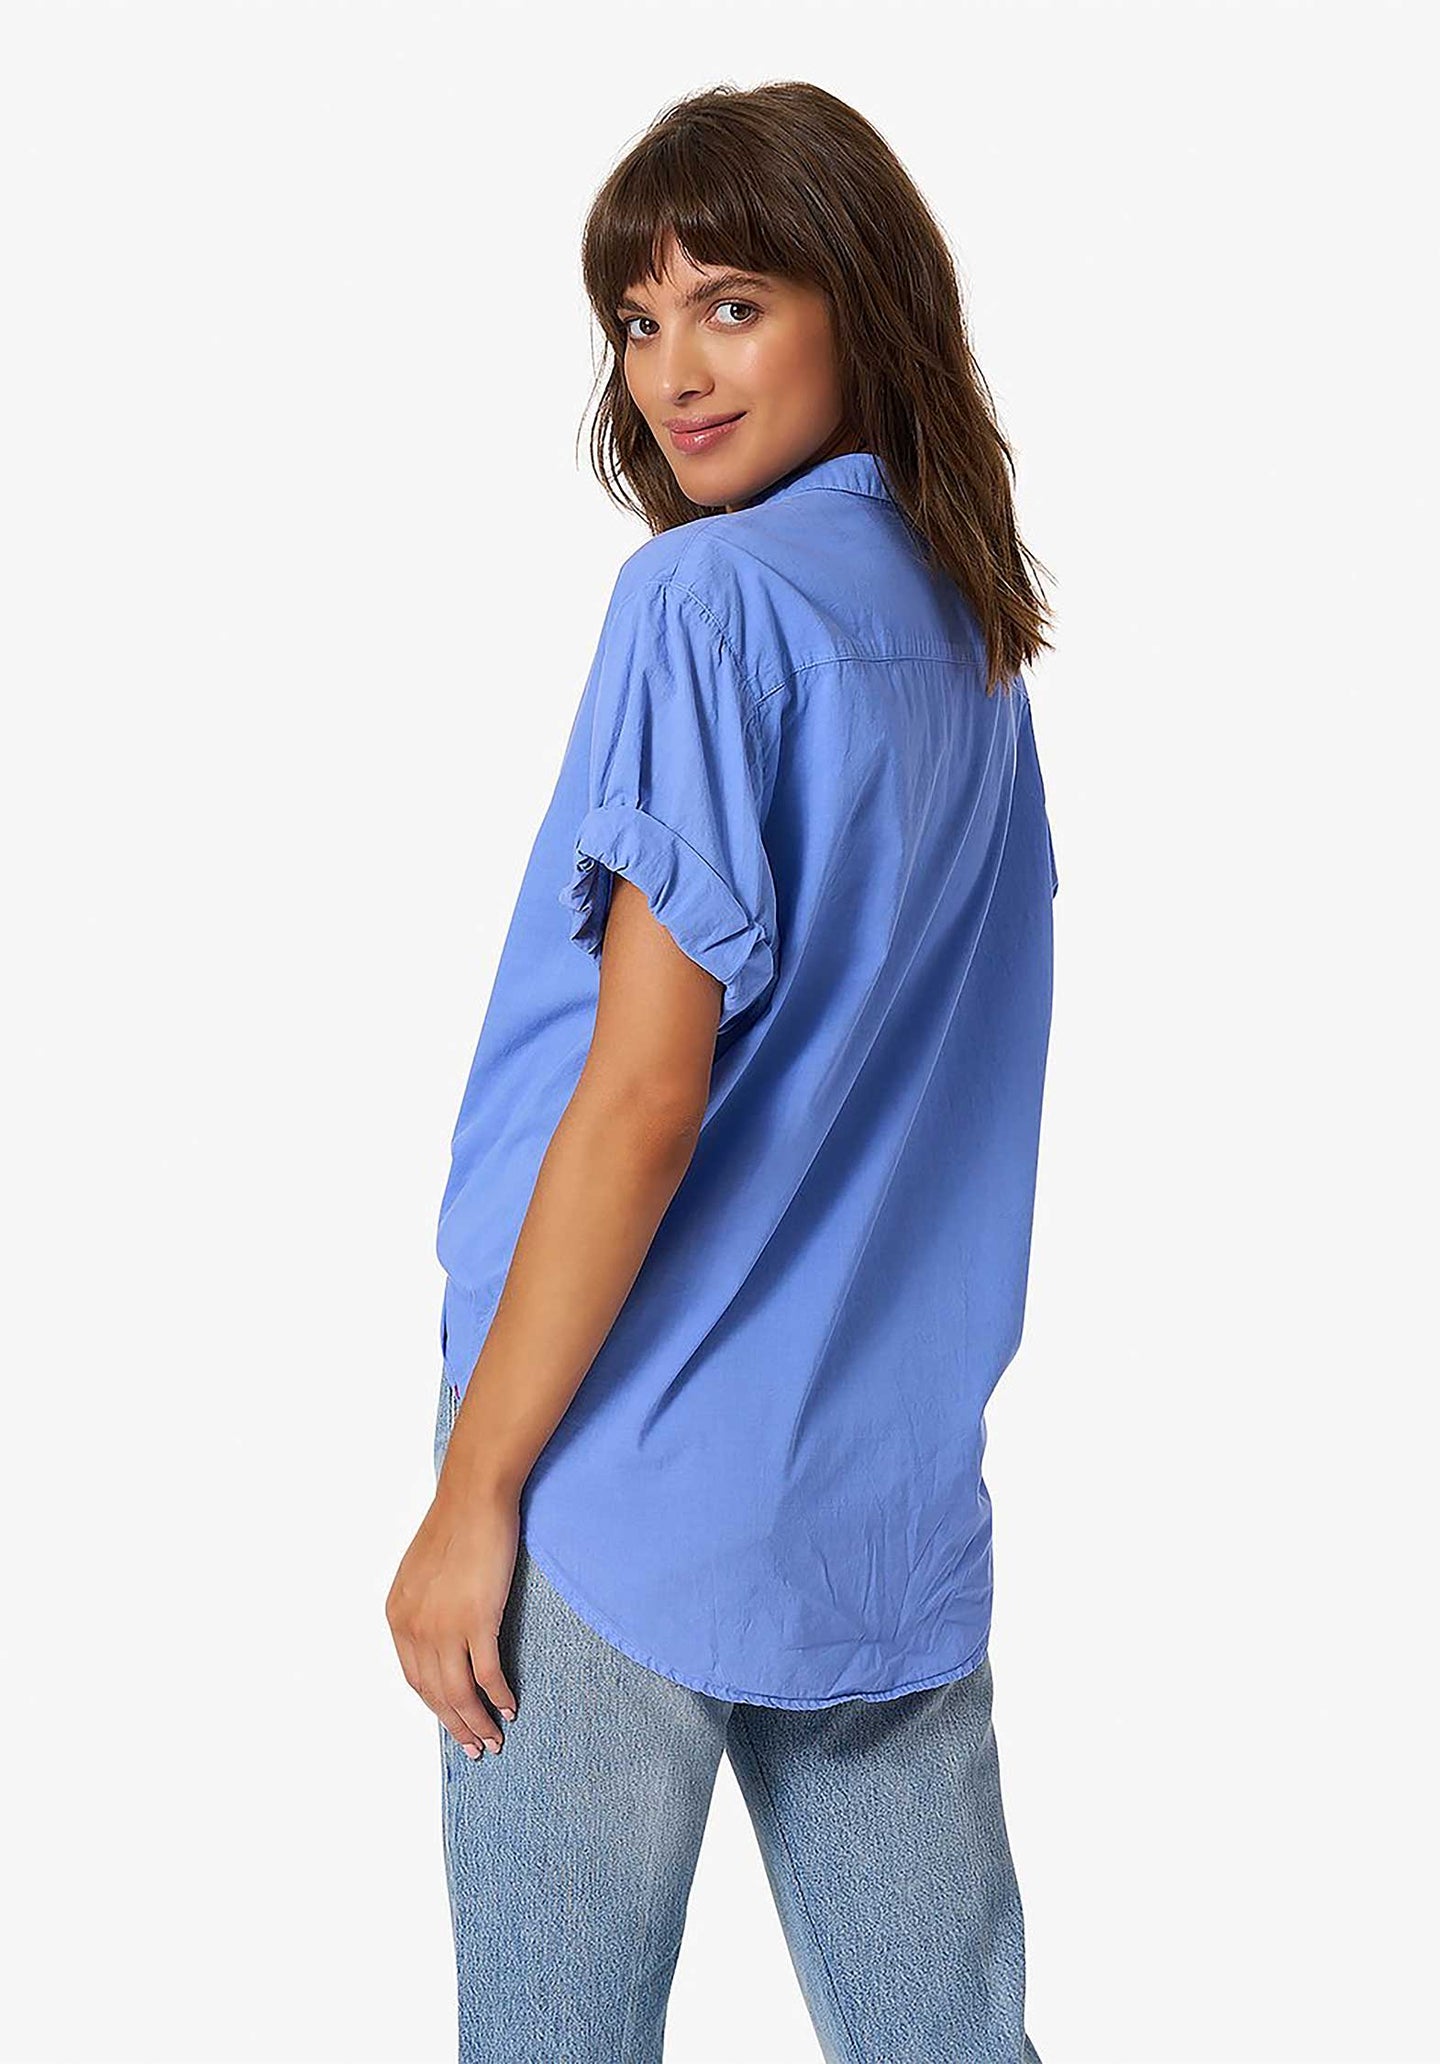 Shirt X08514 Channing Channing Shirt All-Blue